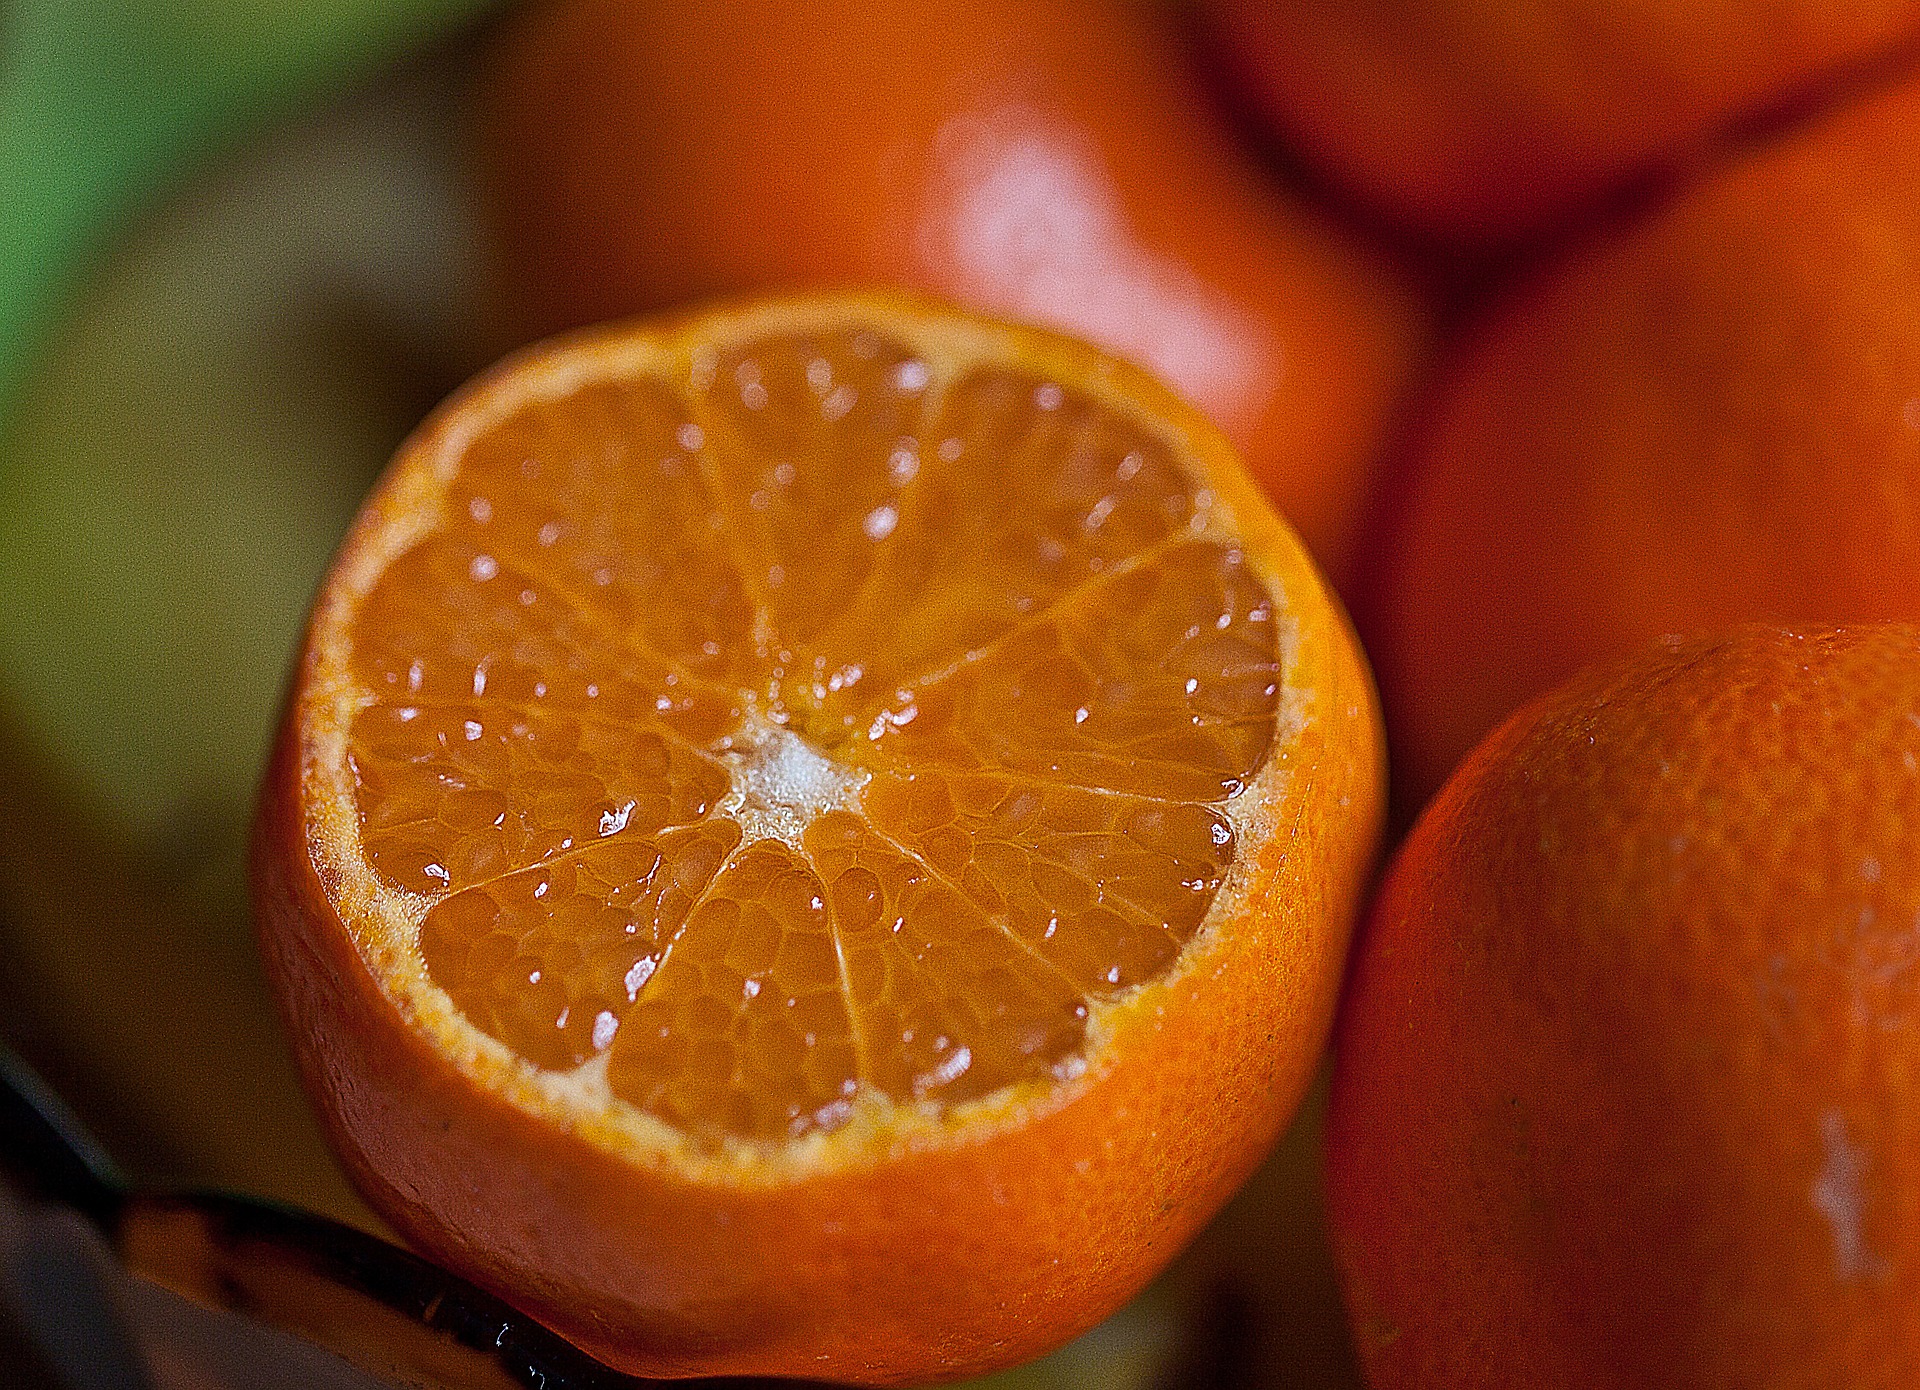 Vitamin C Containing Oranges